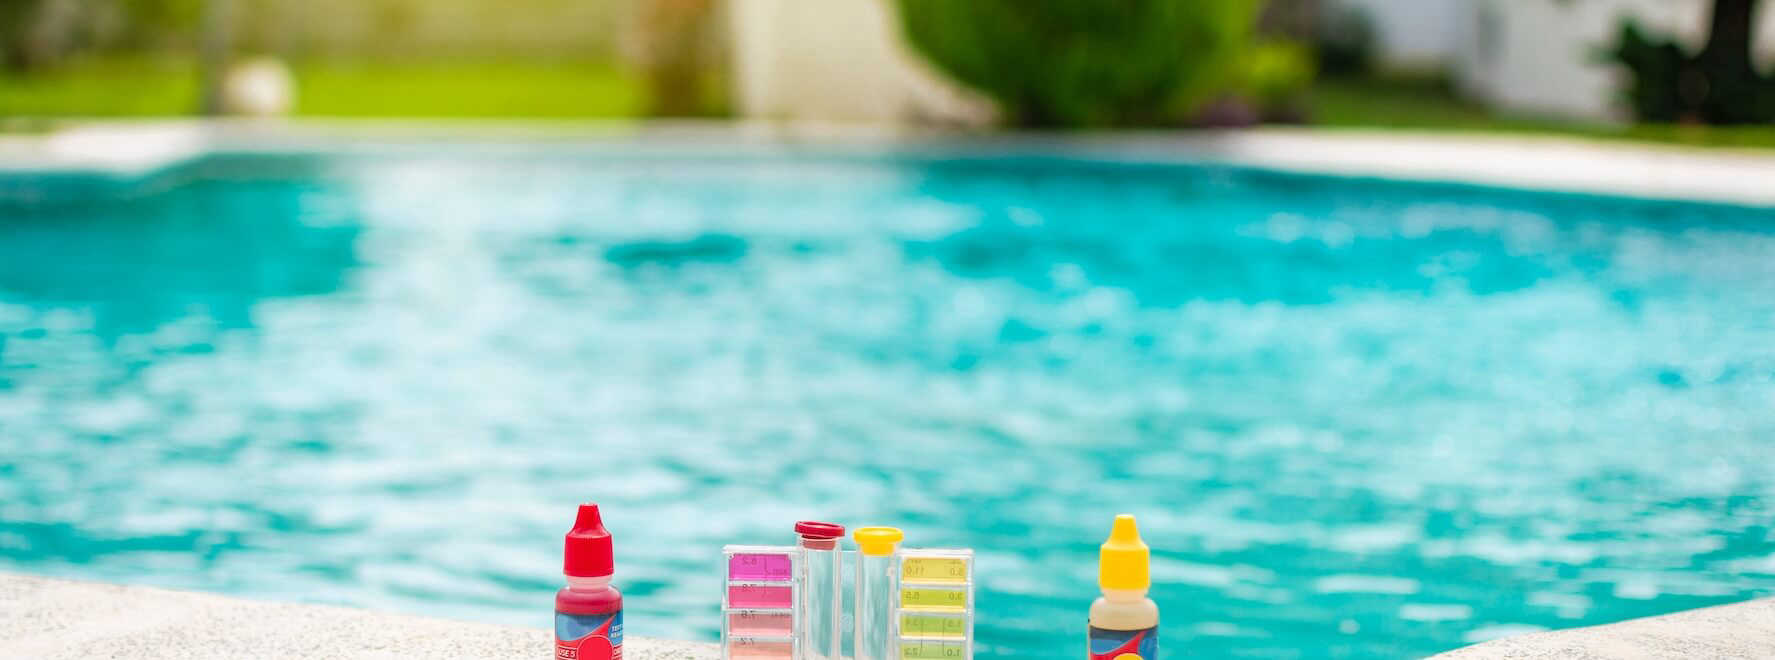 traitement chloramines piscine